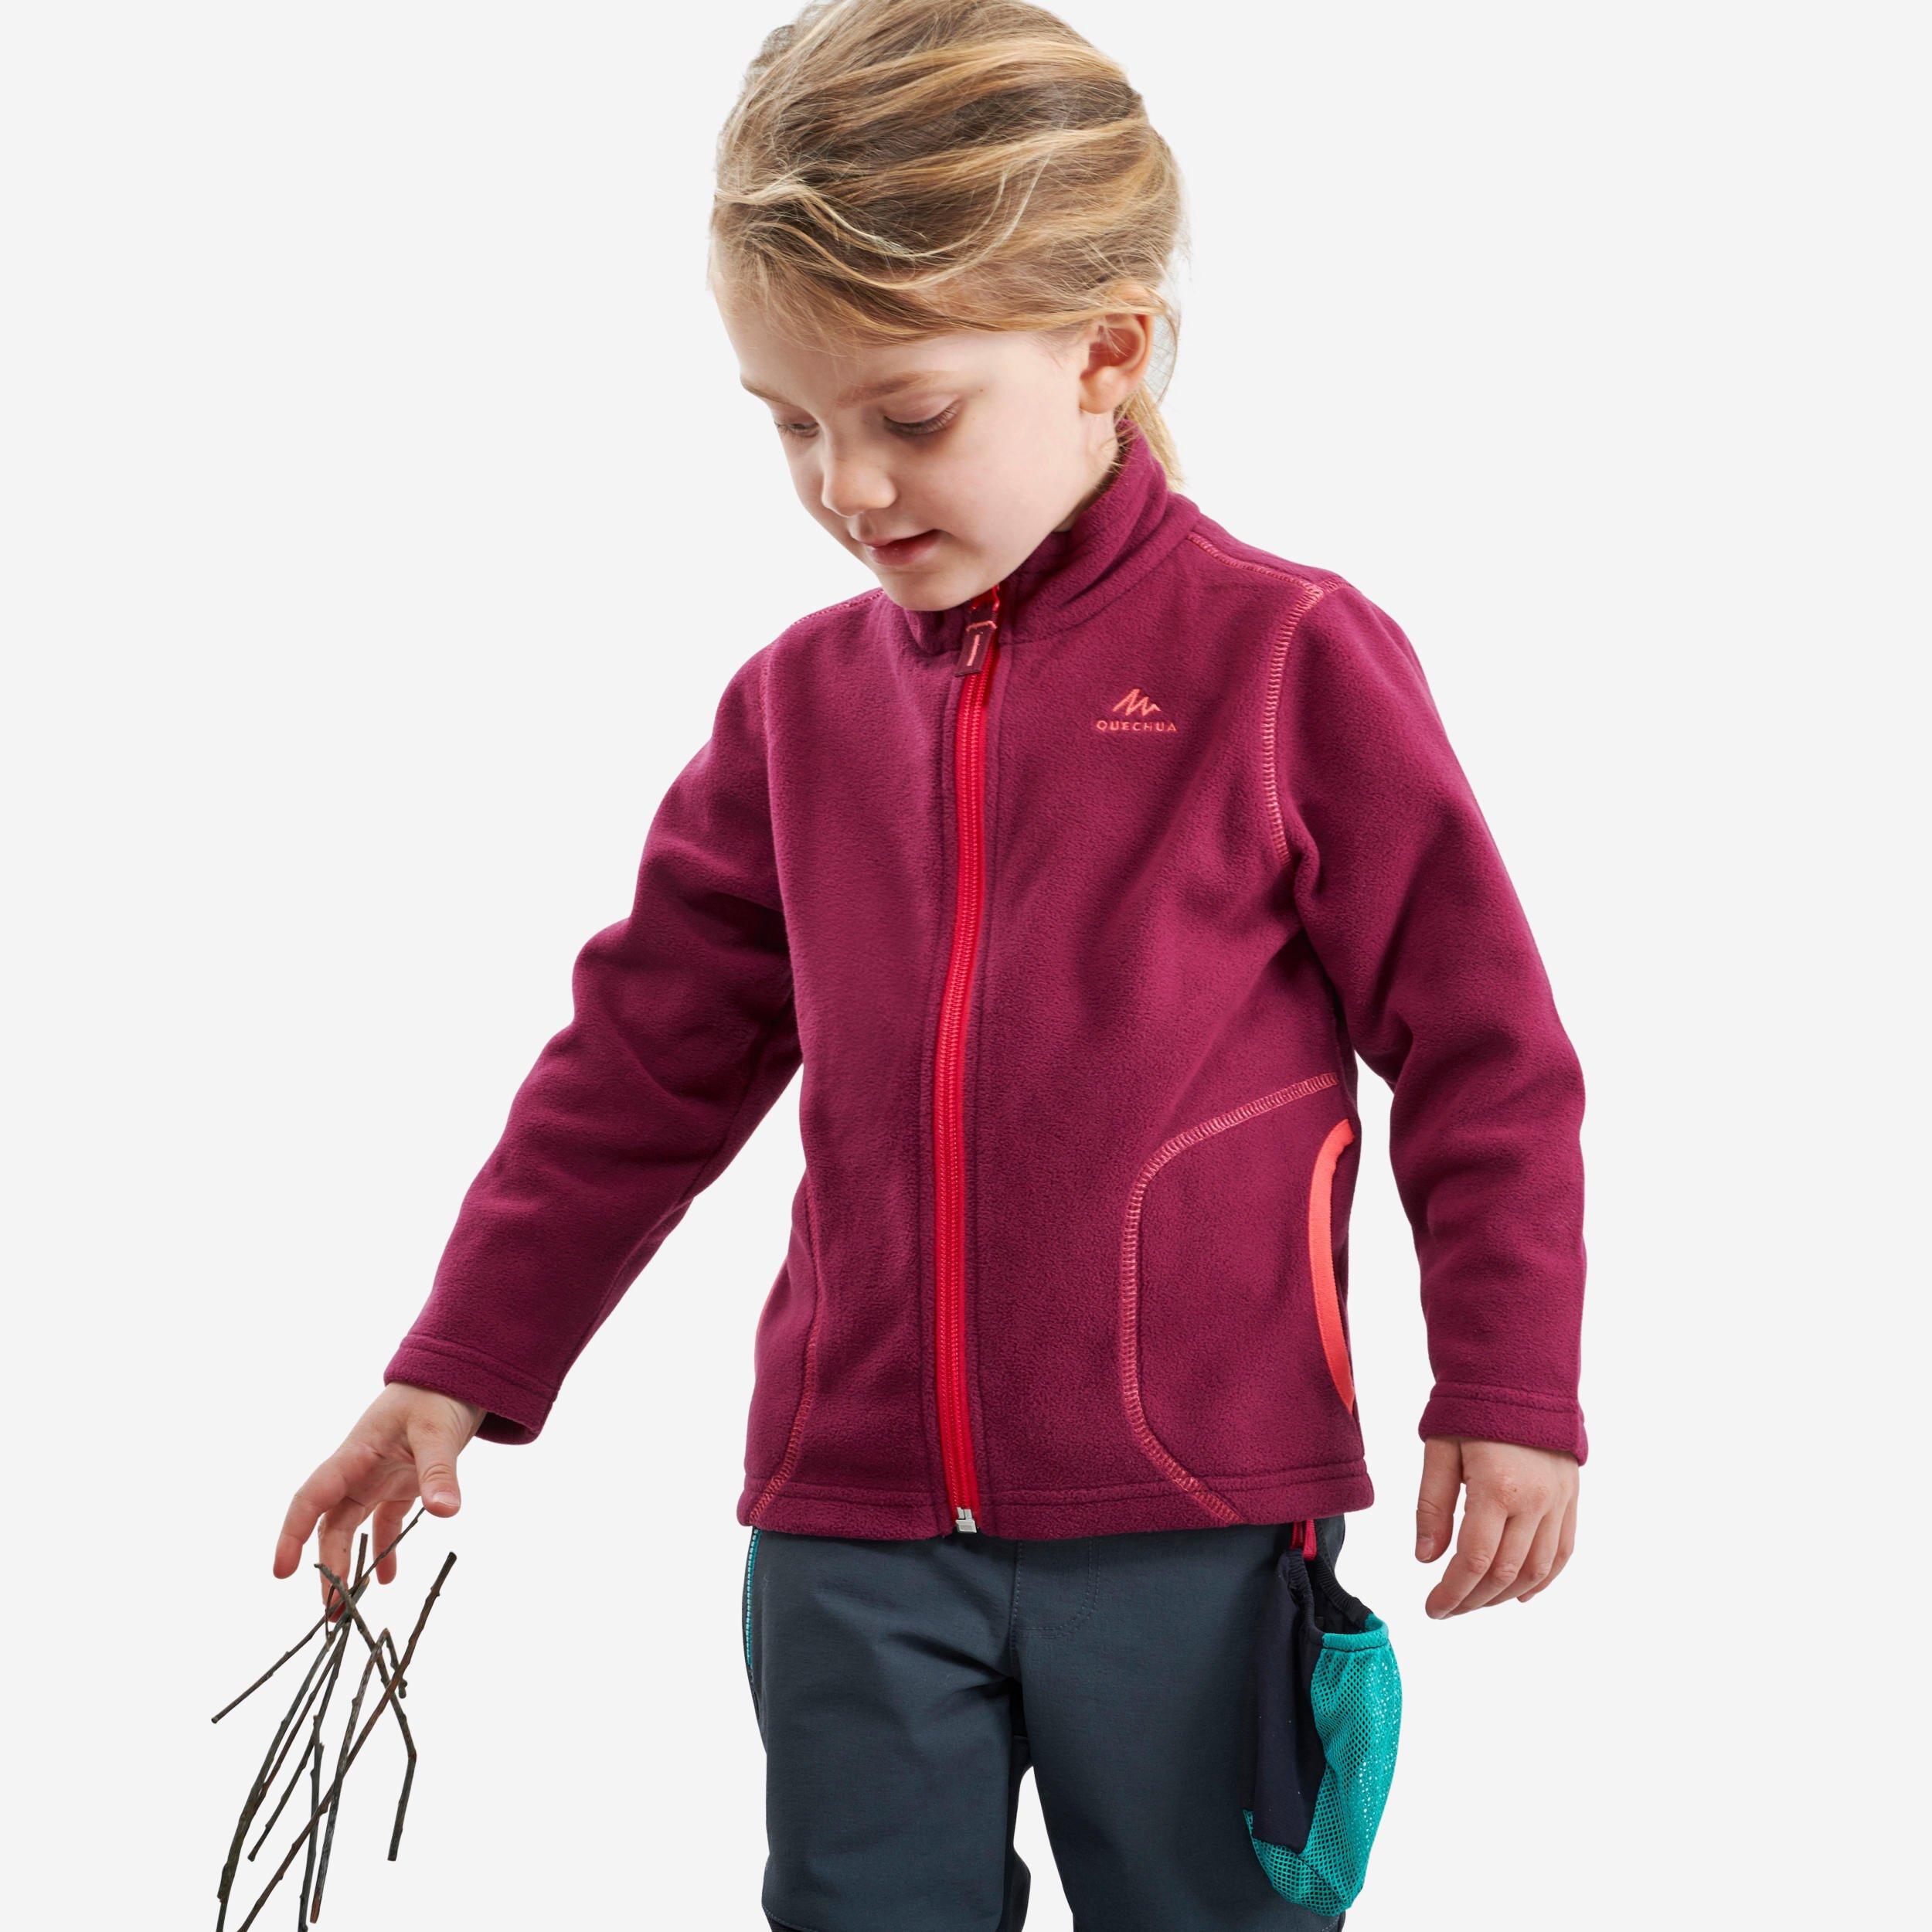 Decathlon Kids’ Hiking Fleece Jacket Mh150 2-6 Years